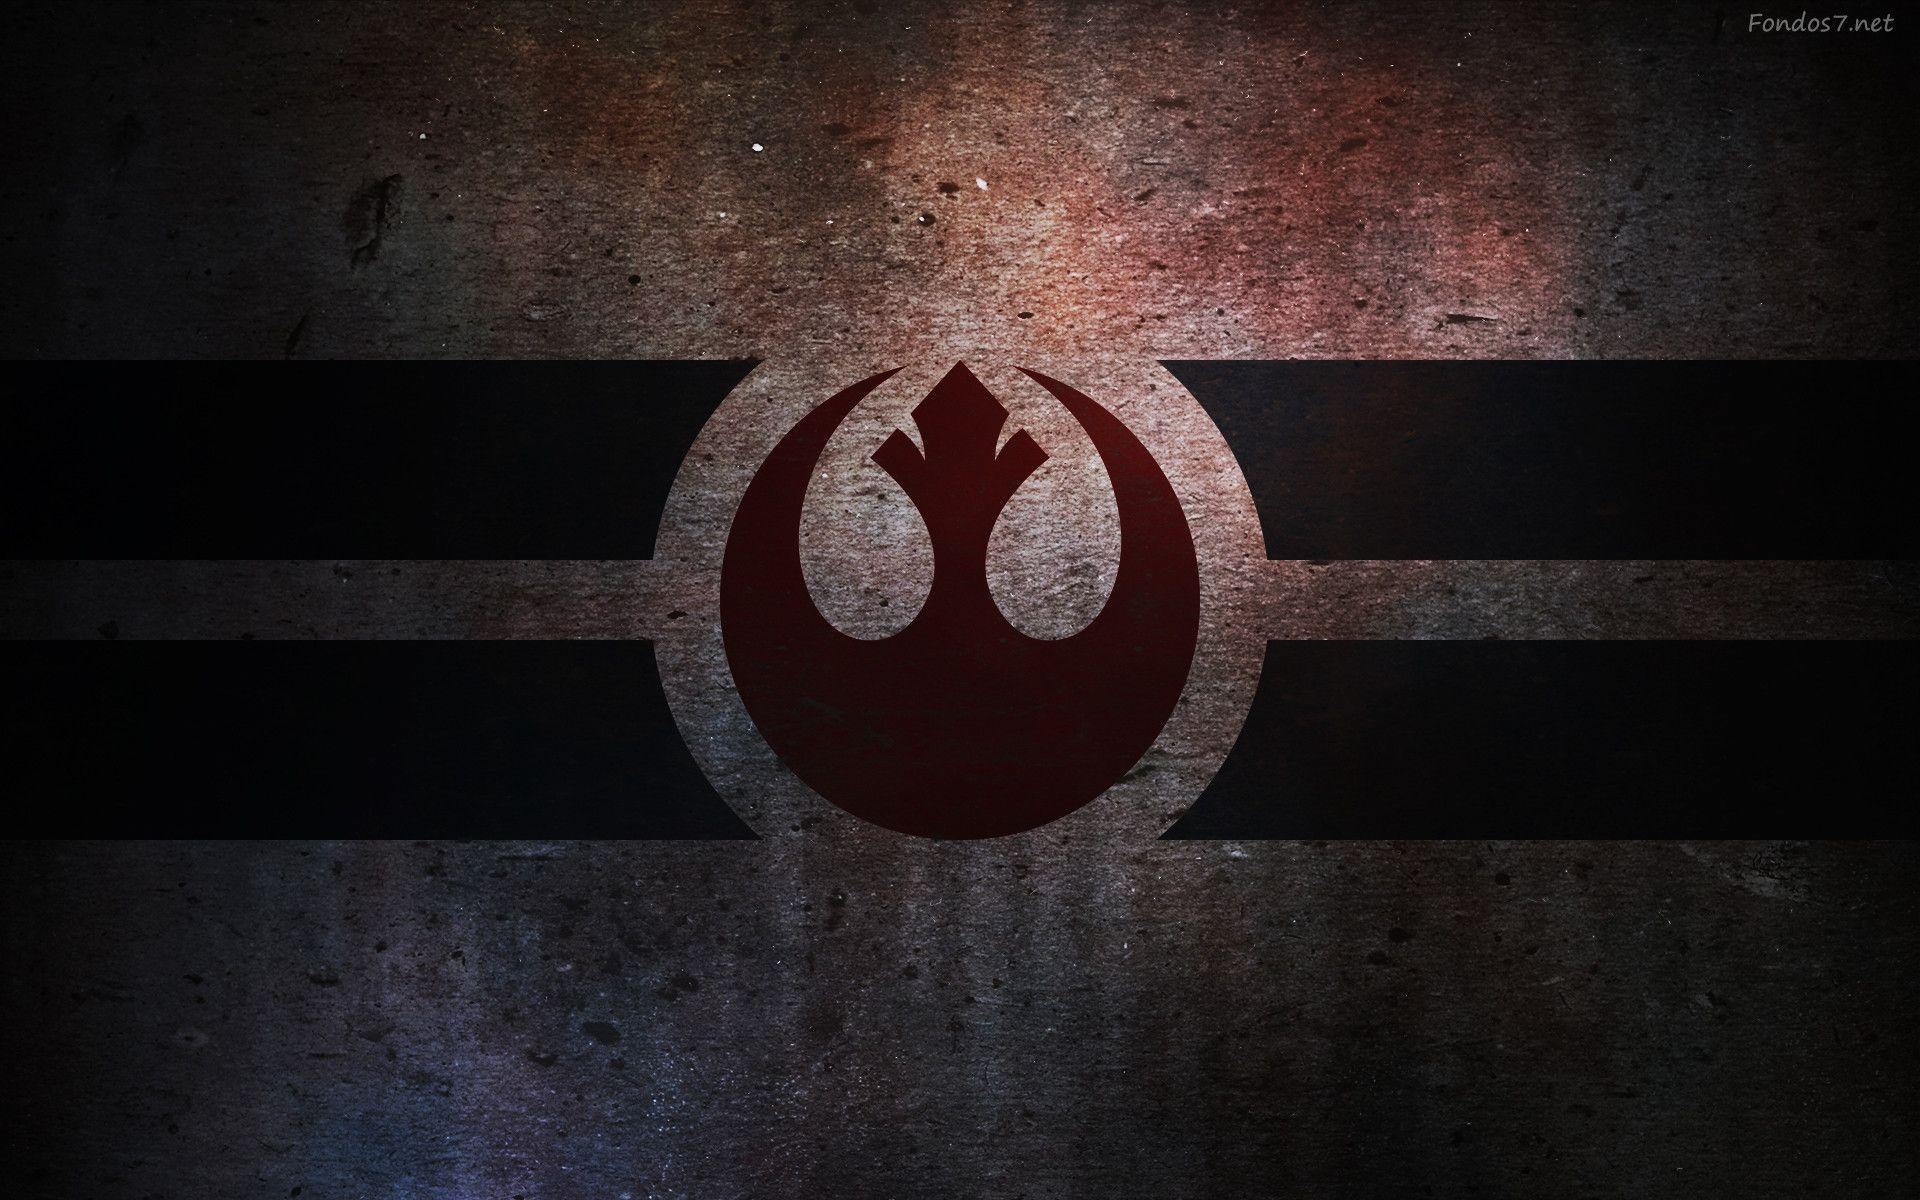 Yoda Star Wars Logo star wars text star Wars Episode VII desktop  Wallpaper png  PNGWing